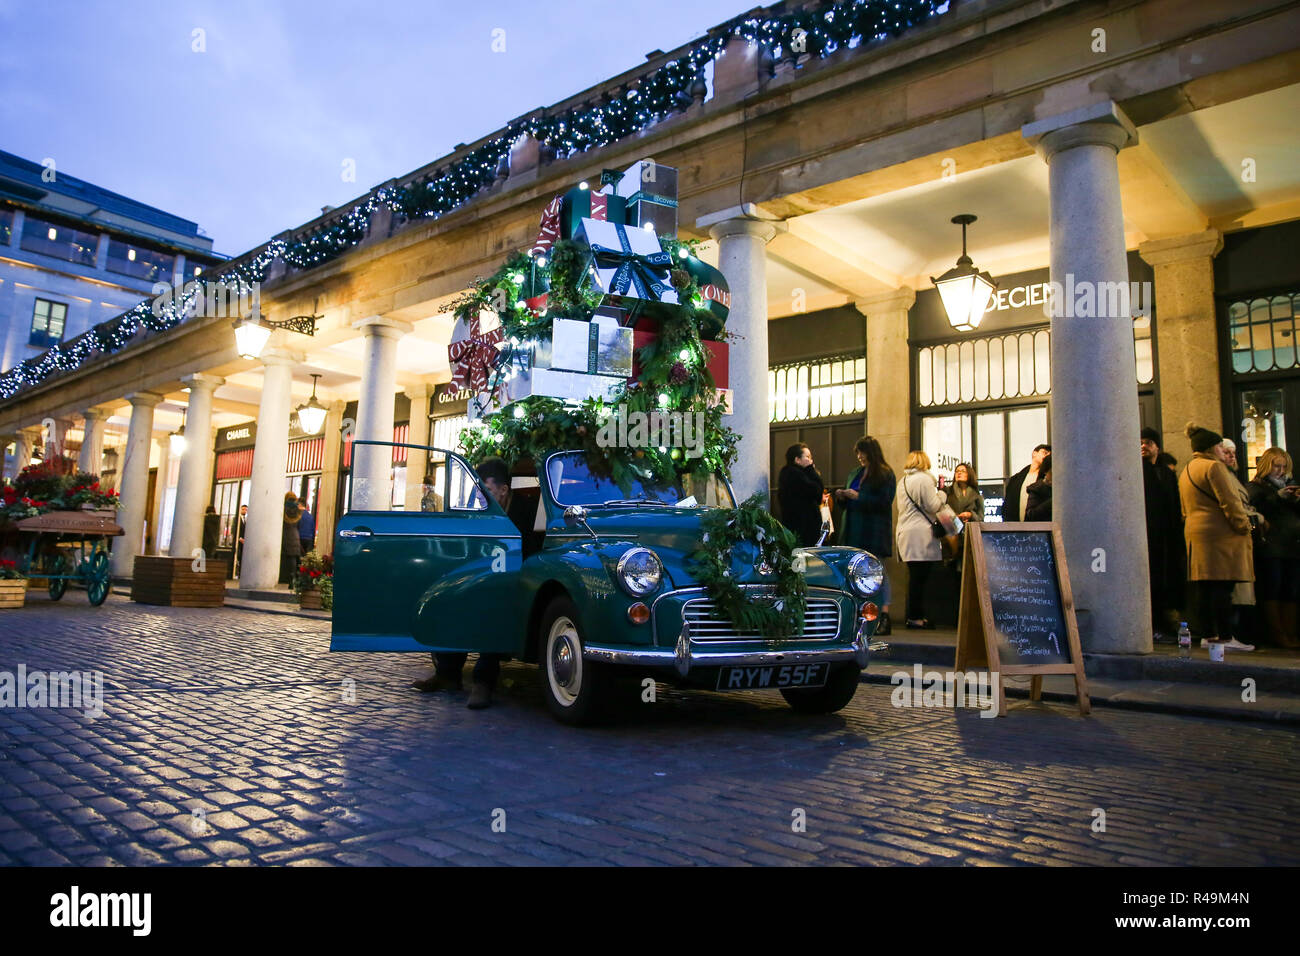 Ein klassisches Auto mit Weihnachtsgeschenke verziert ist in Covent Gardens gesehen. Stockfoto